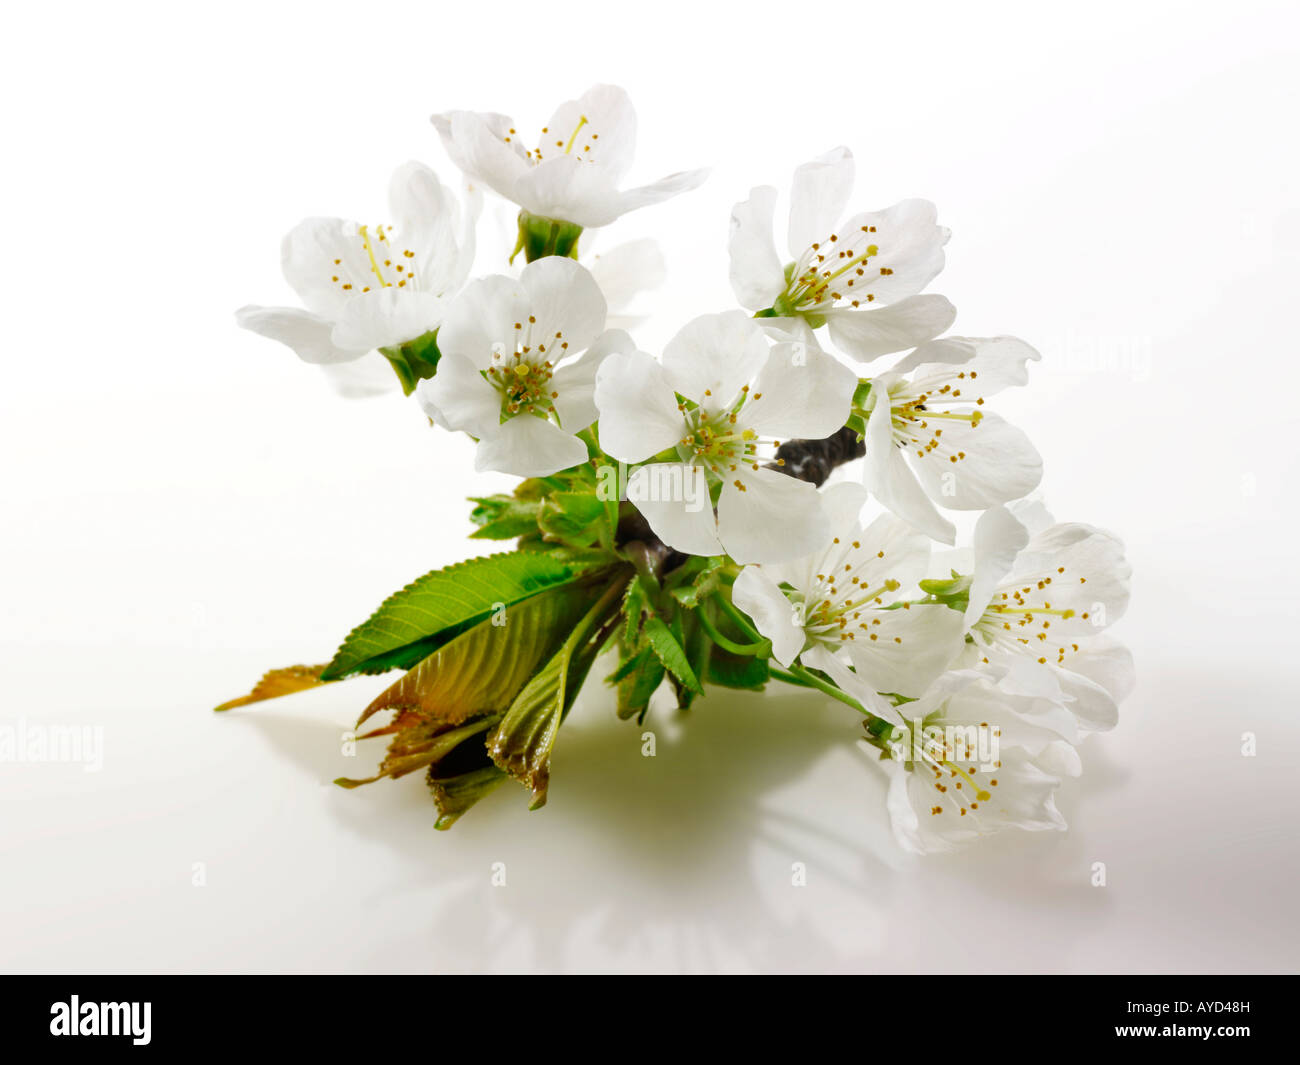 Fotos de flor de cerezo blancos frescos, flores y pétalos frescos escogidos de un cerezo Foto de stock